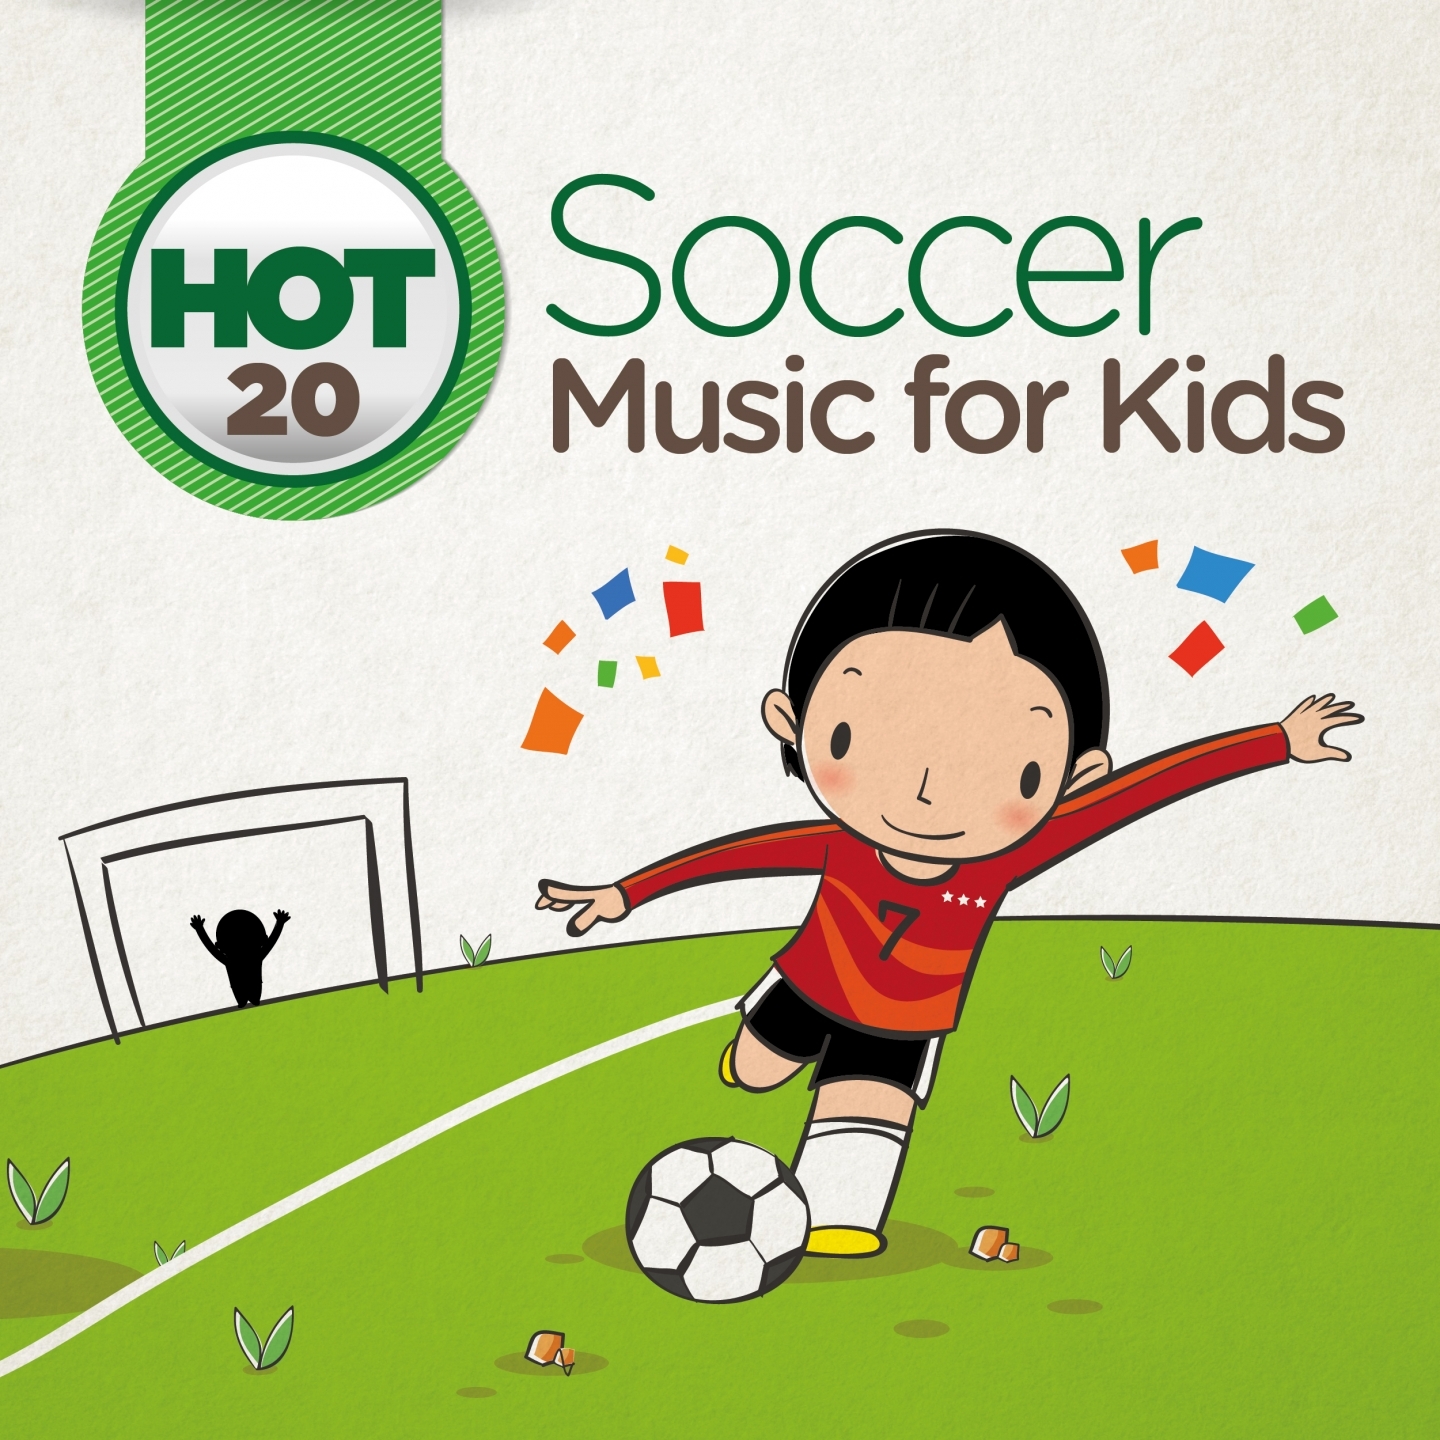 Hot 20 Soccer Music for Kids